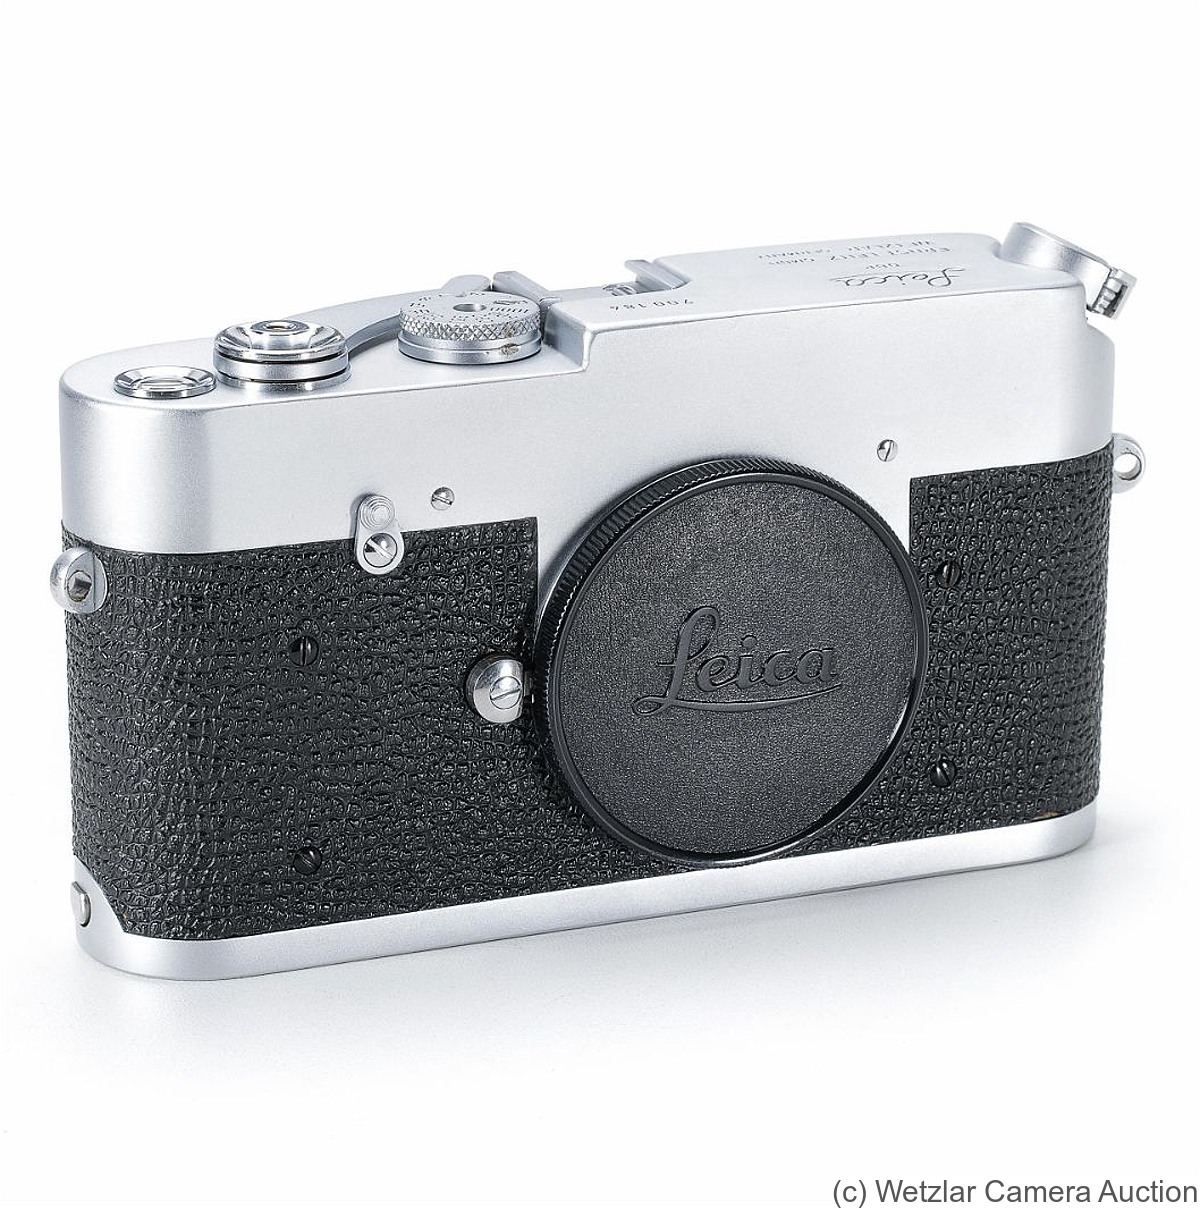 Leitz: M Prototype (24x24) camera